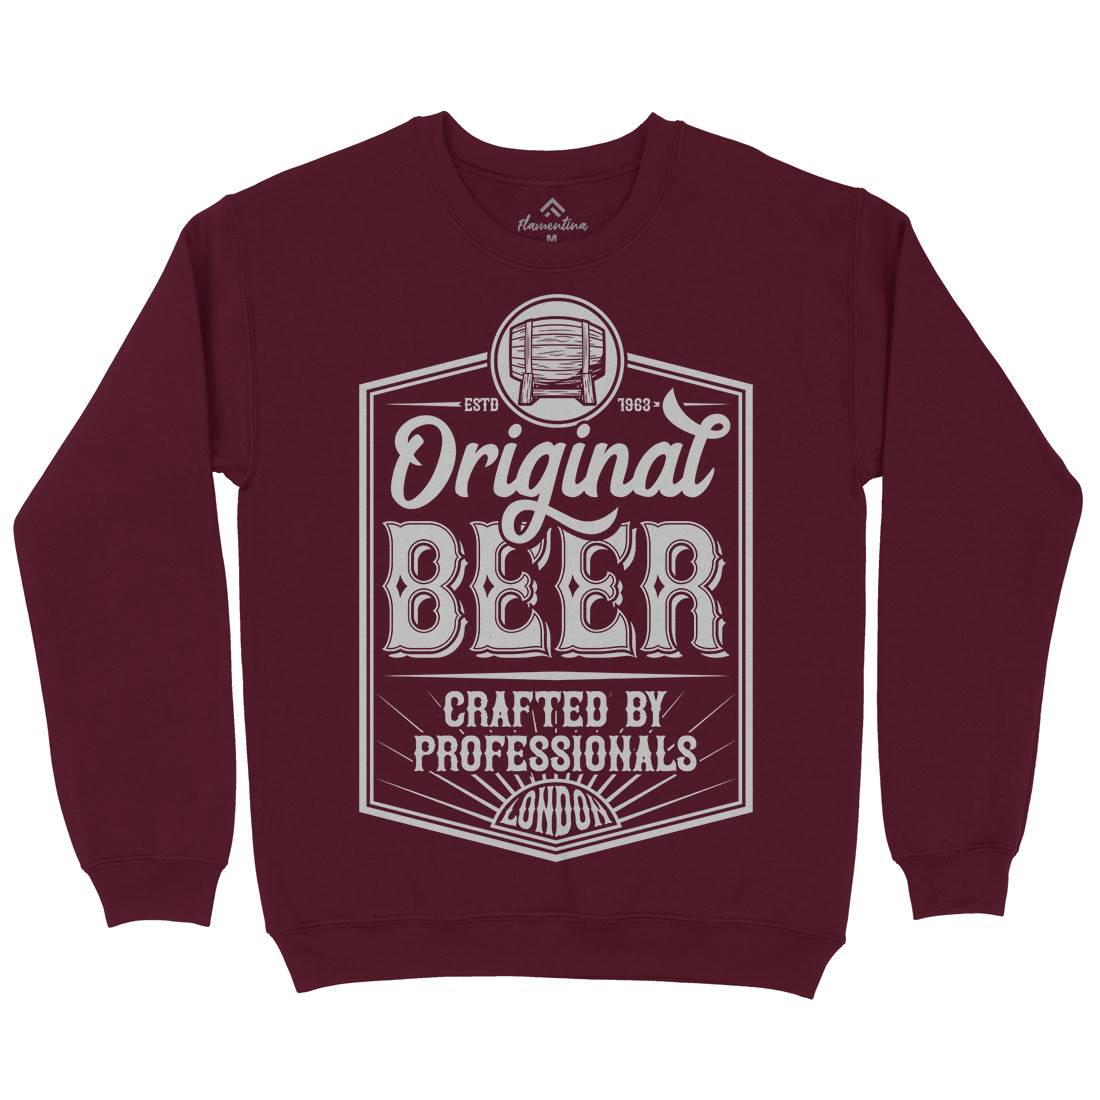 Original Beer Kids Crew Neck Sweatshirt Drinks B280